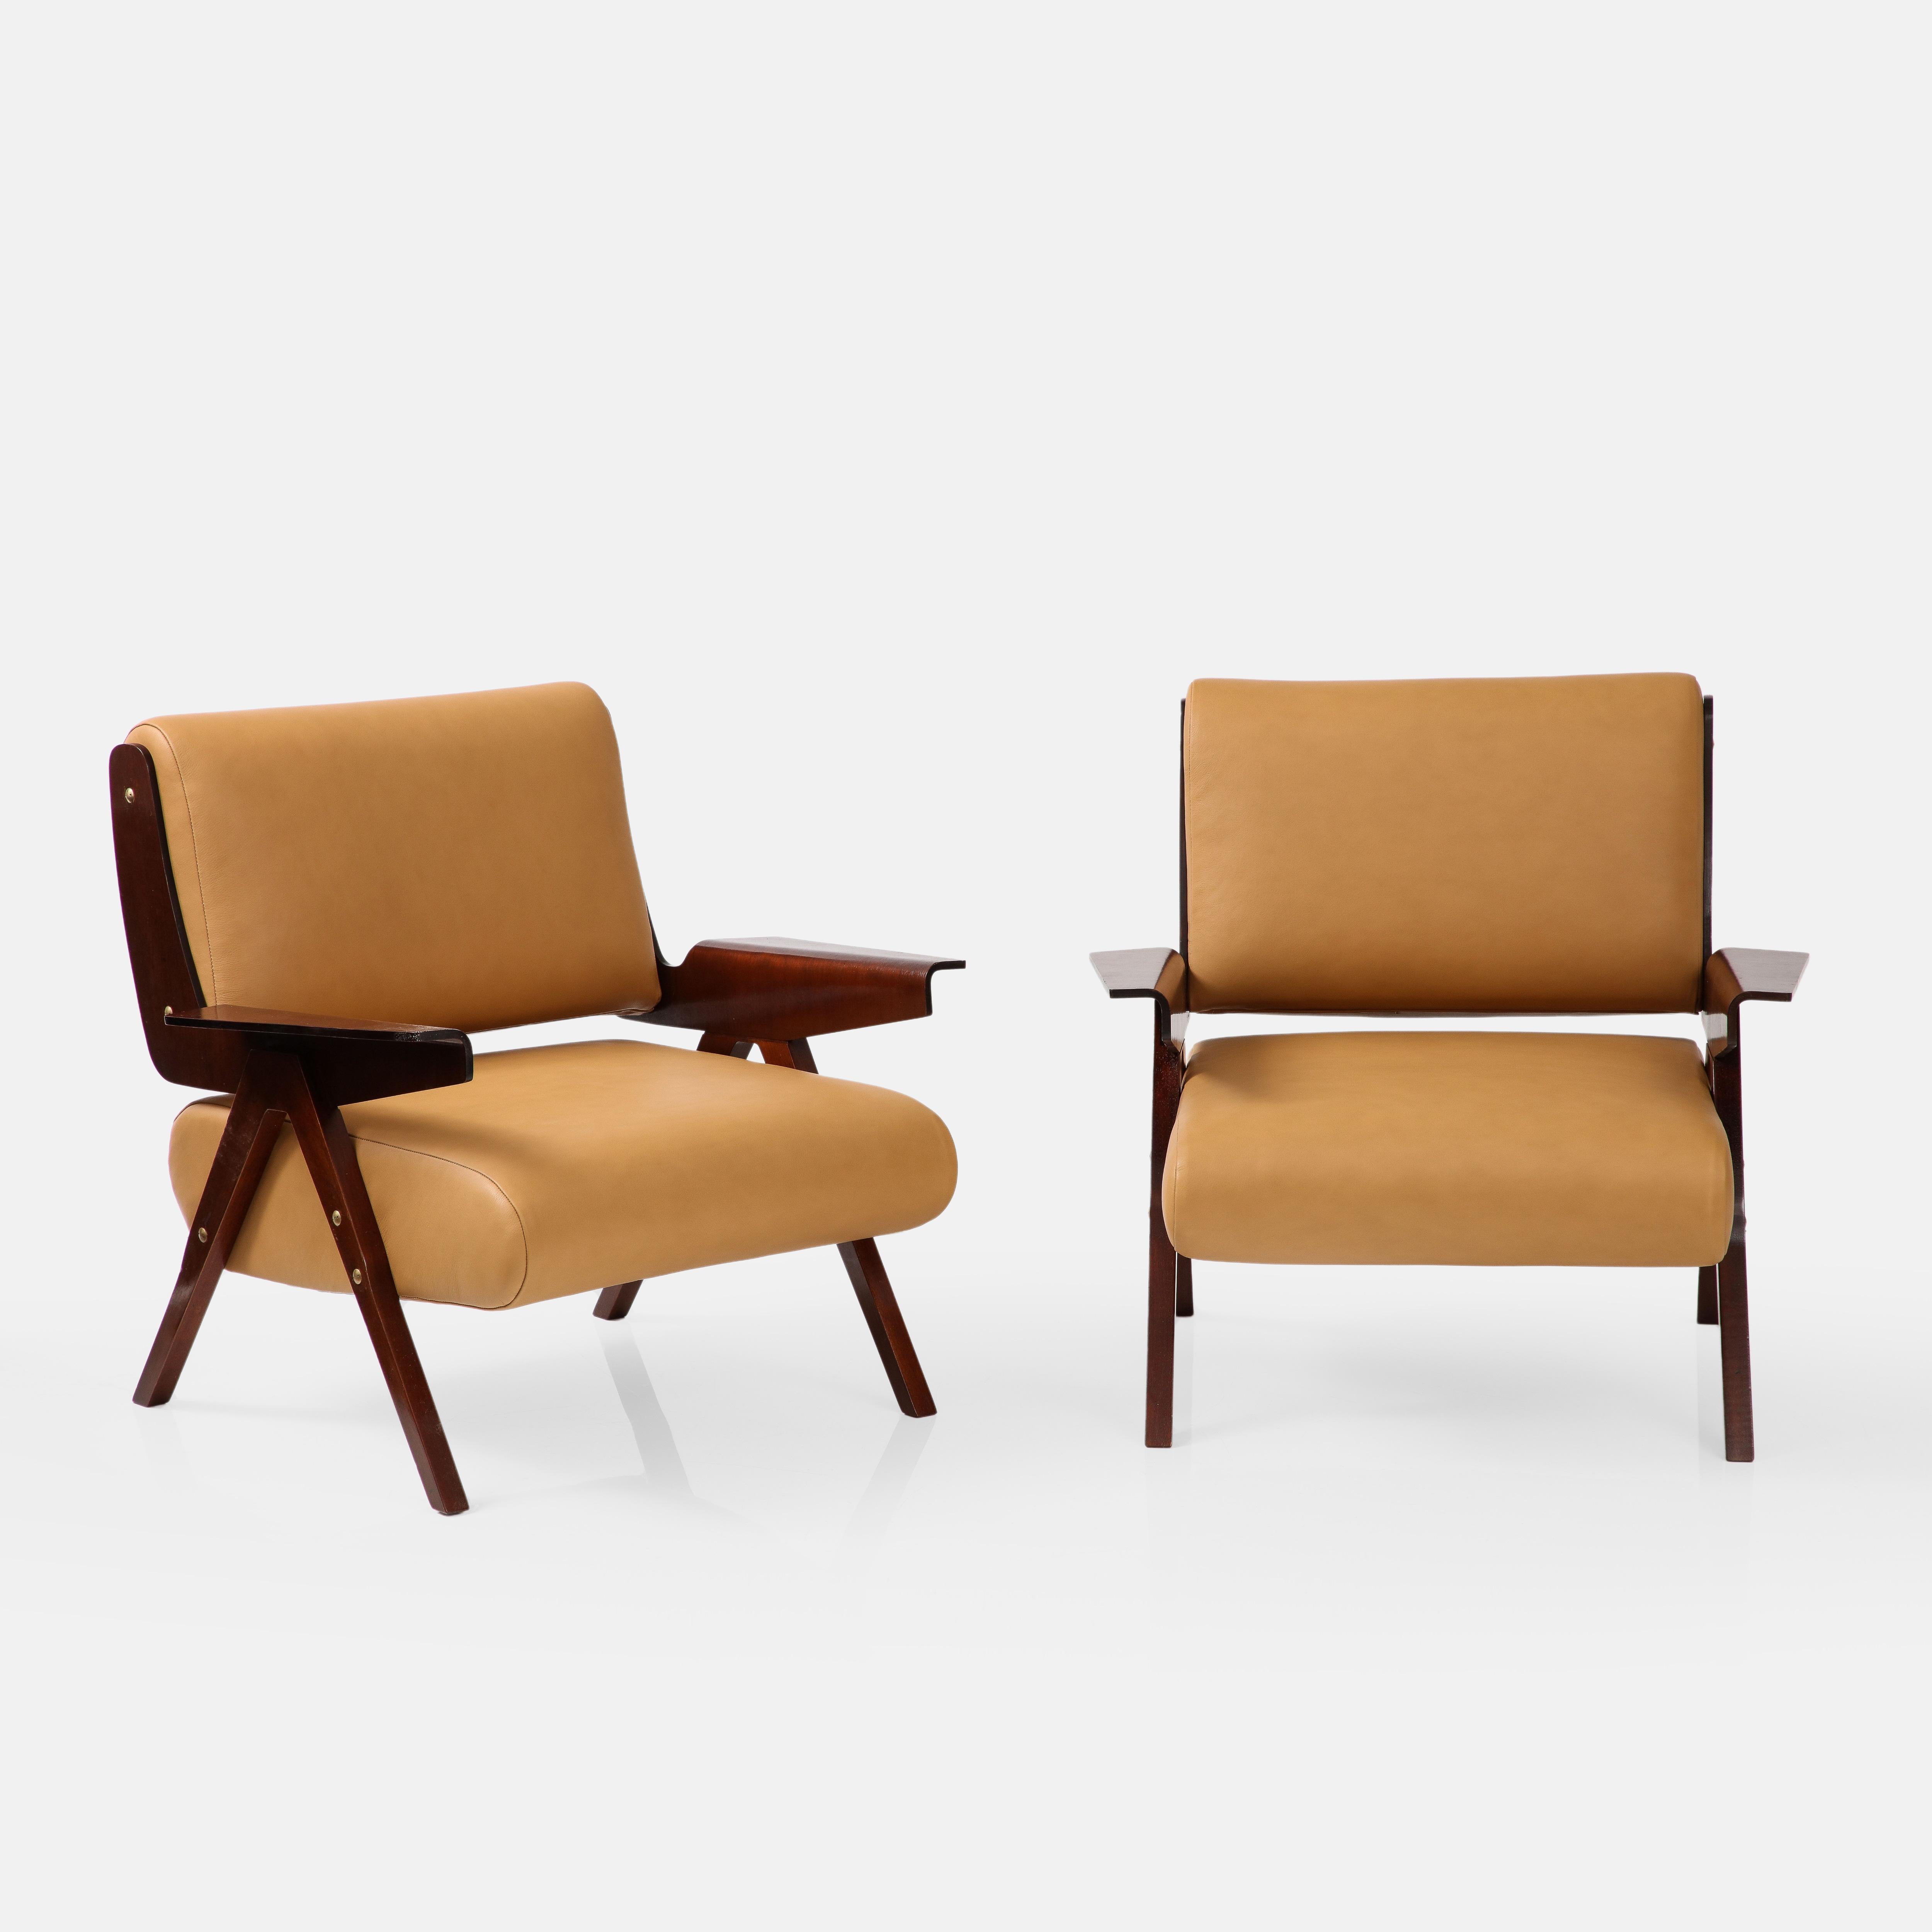 Gianfranco Frattini pour Cassina rare paire de chaises longues modèle 831 avec cadre en placage d'acajou et contreplaqué plié avec des montures en laiton, et rembourrage en cuir de chameau, Italie, 1955. Ces chaises longues au modèle sculptural sont